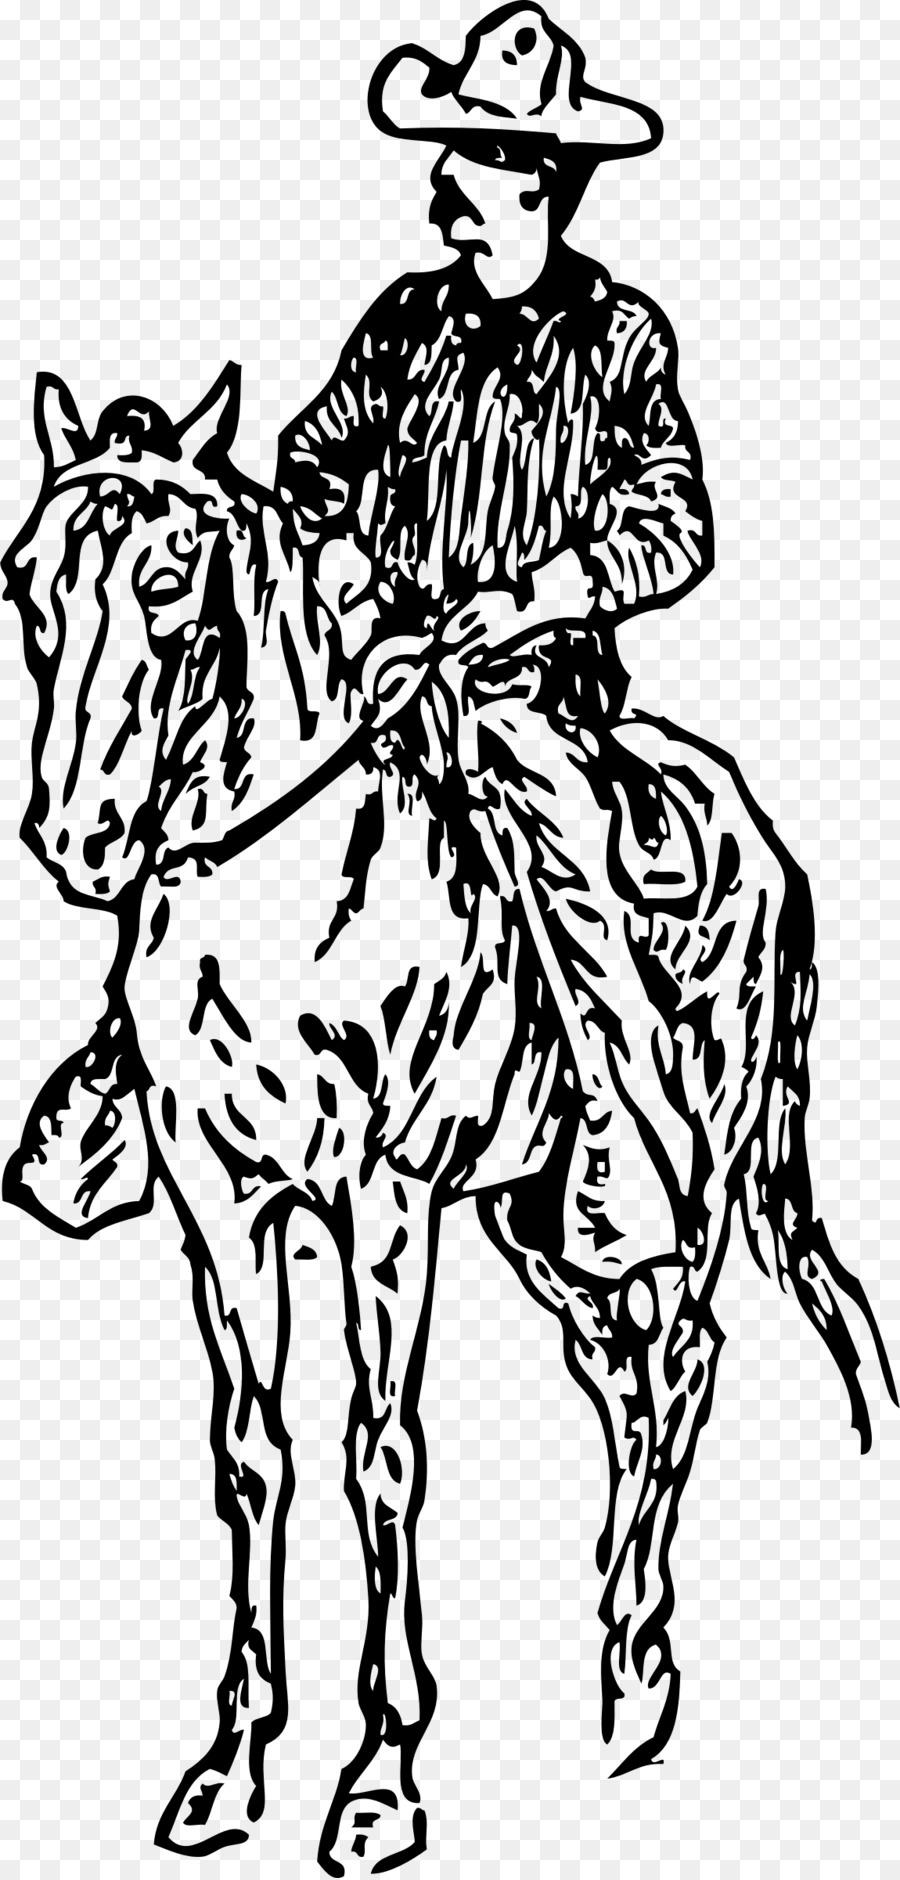 Horse Equestrian Drawing Cowboy Clip art - cowboy png download - 1150*2400 - Free Transparent Horse png Download.